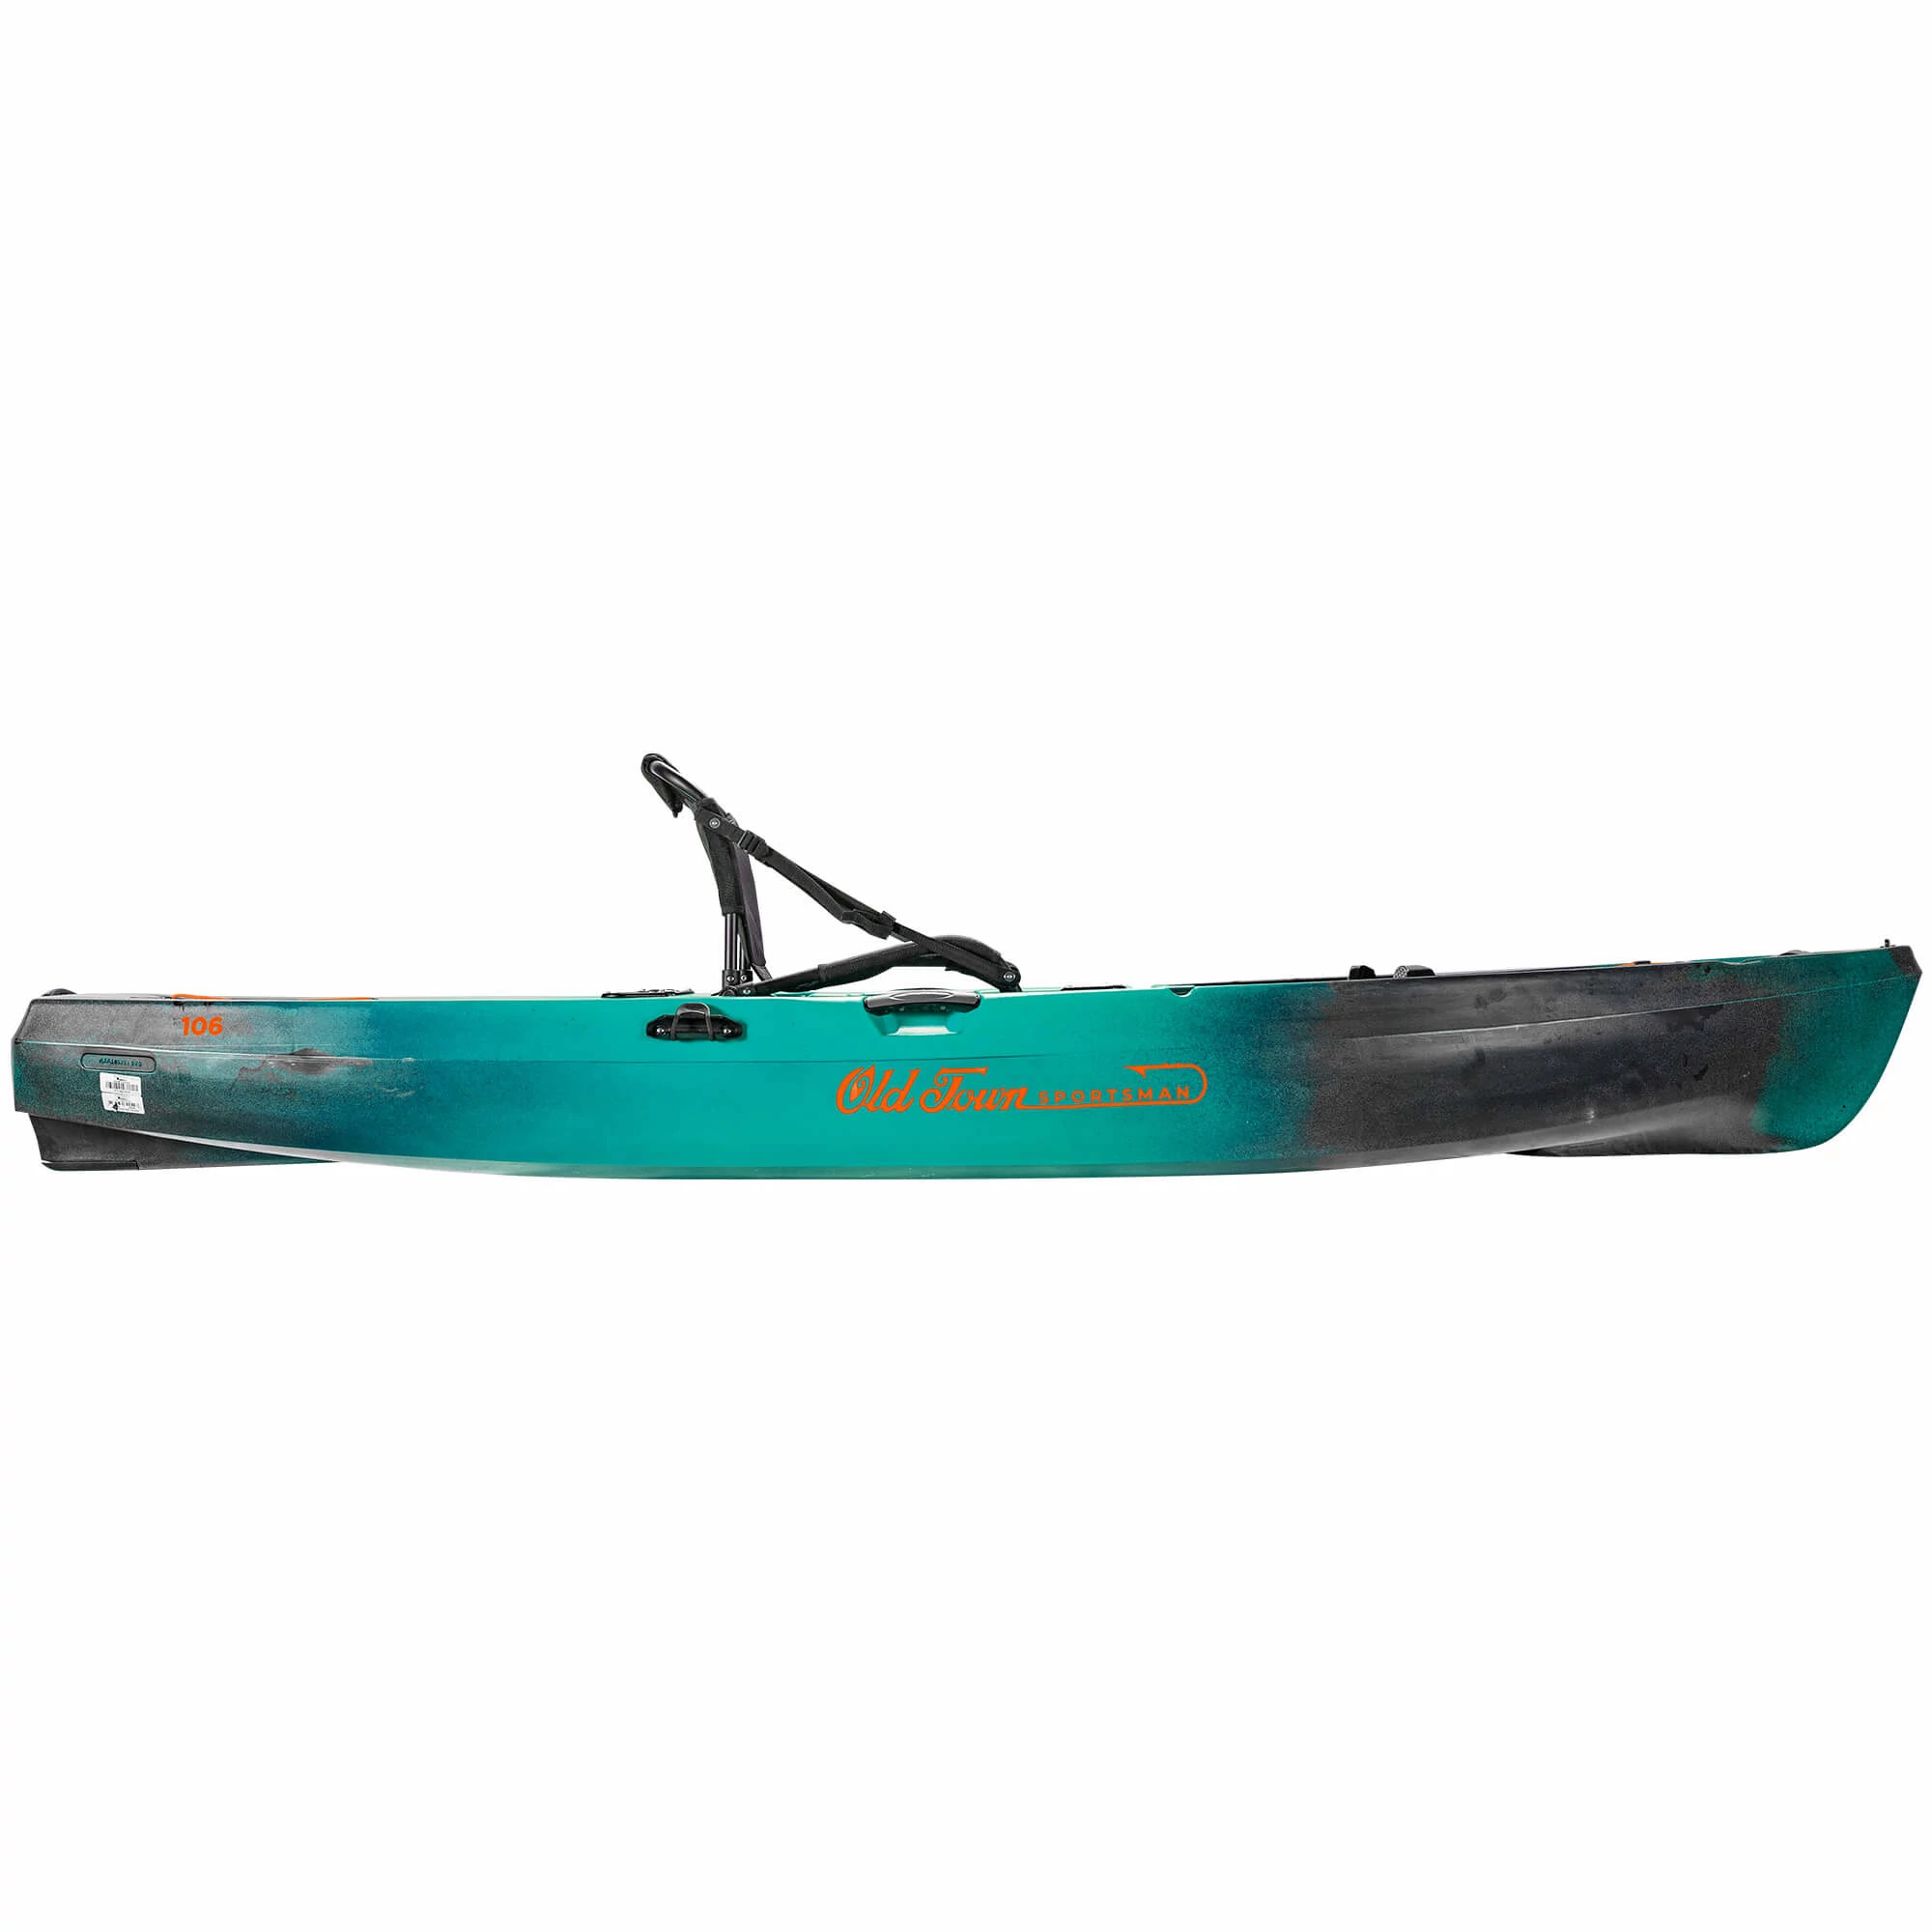 Kayak Paddle Holder Boat Canoe Paddles Oar Mount Track Rail Install Clip 